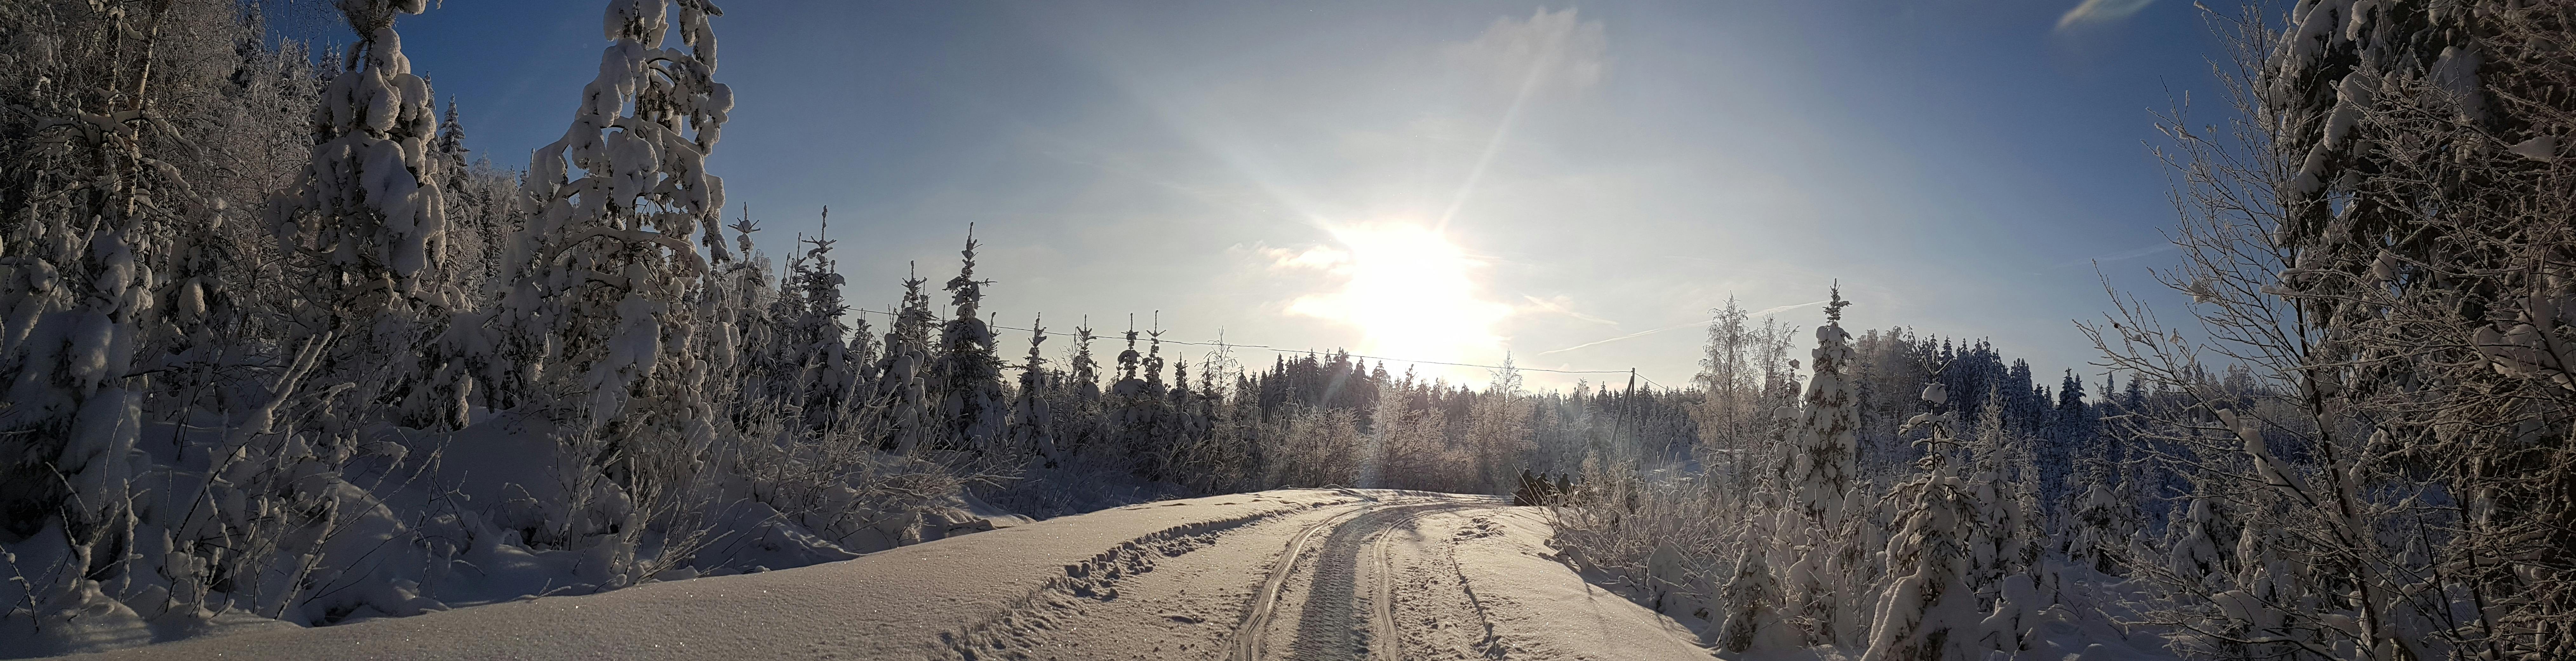 Schneeschuhwanderung durch einen finnischen Wald